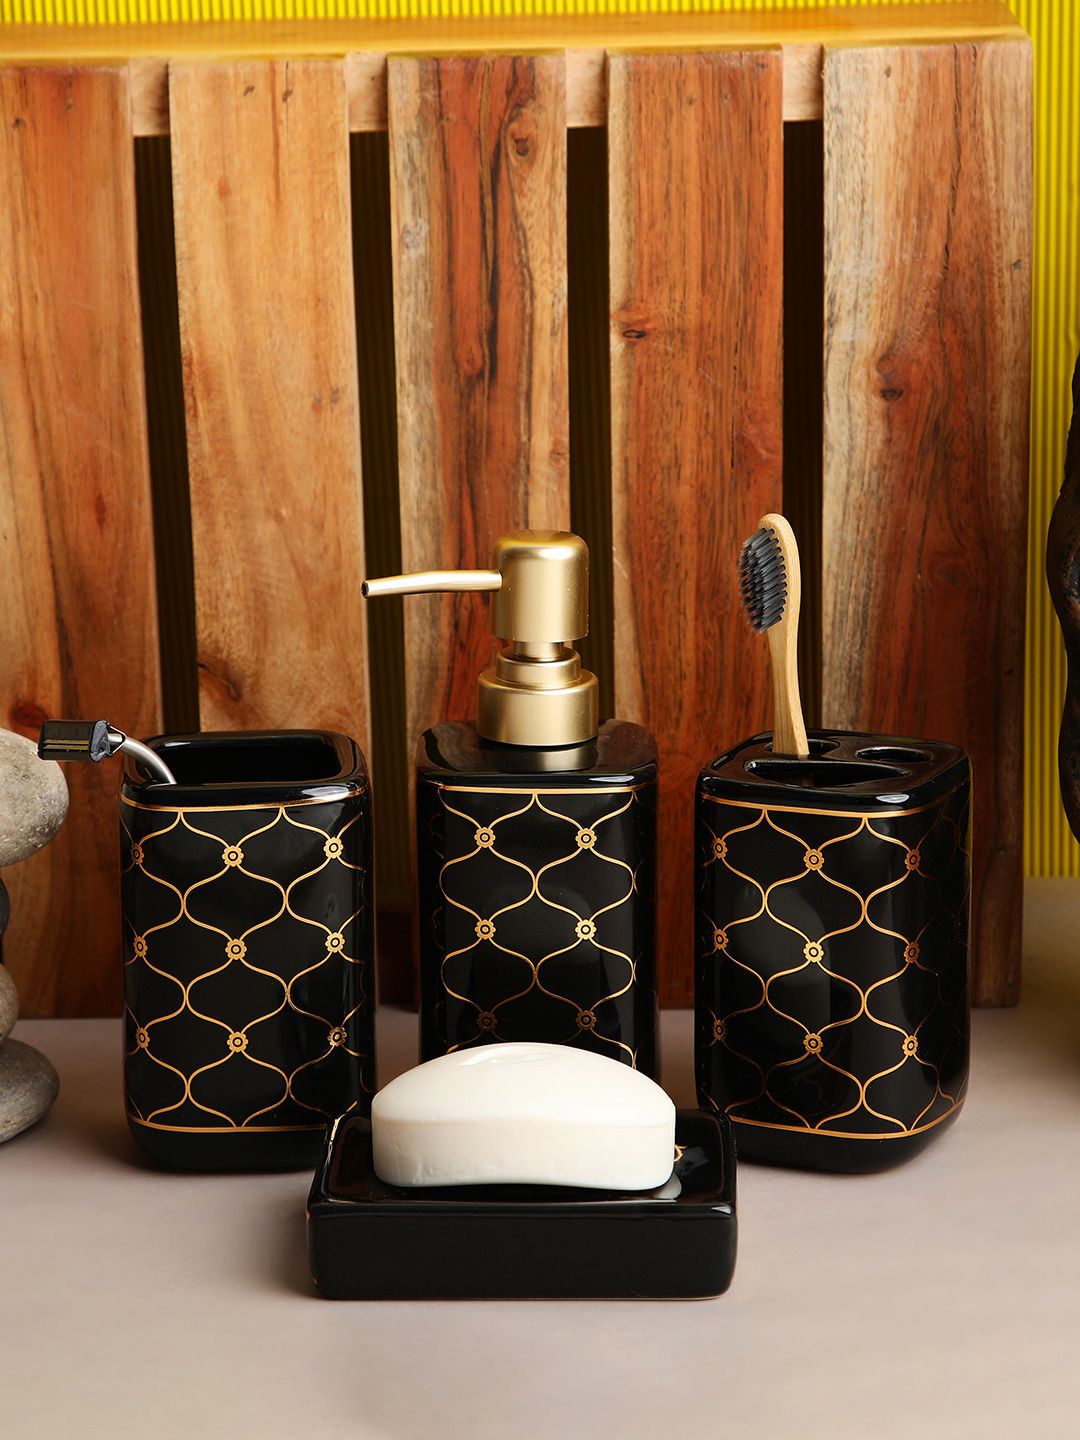 ROMEE Black & Gold-Toned Ceramic Bathroom Accessories Set Price in India